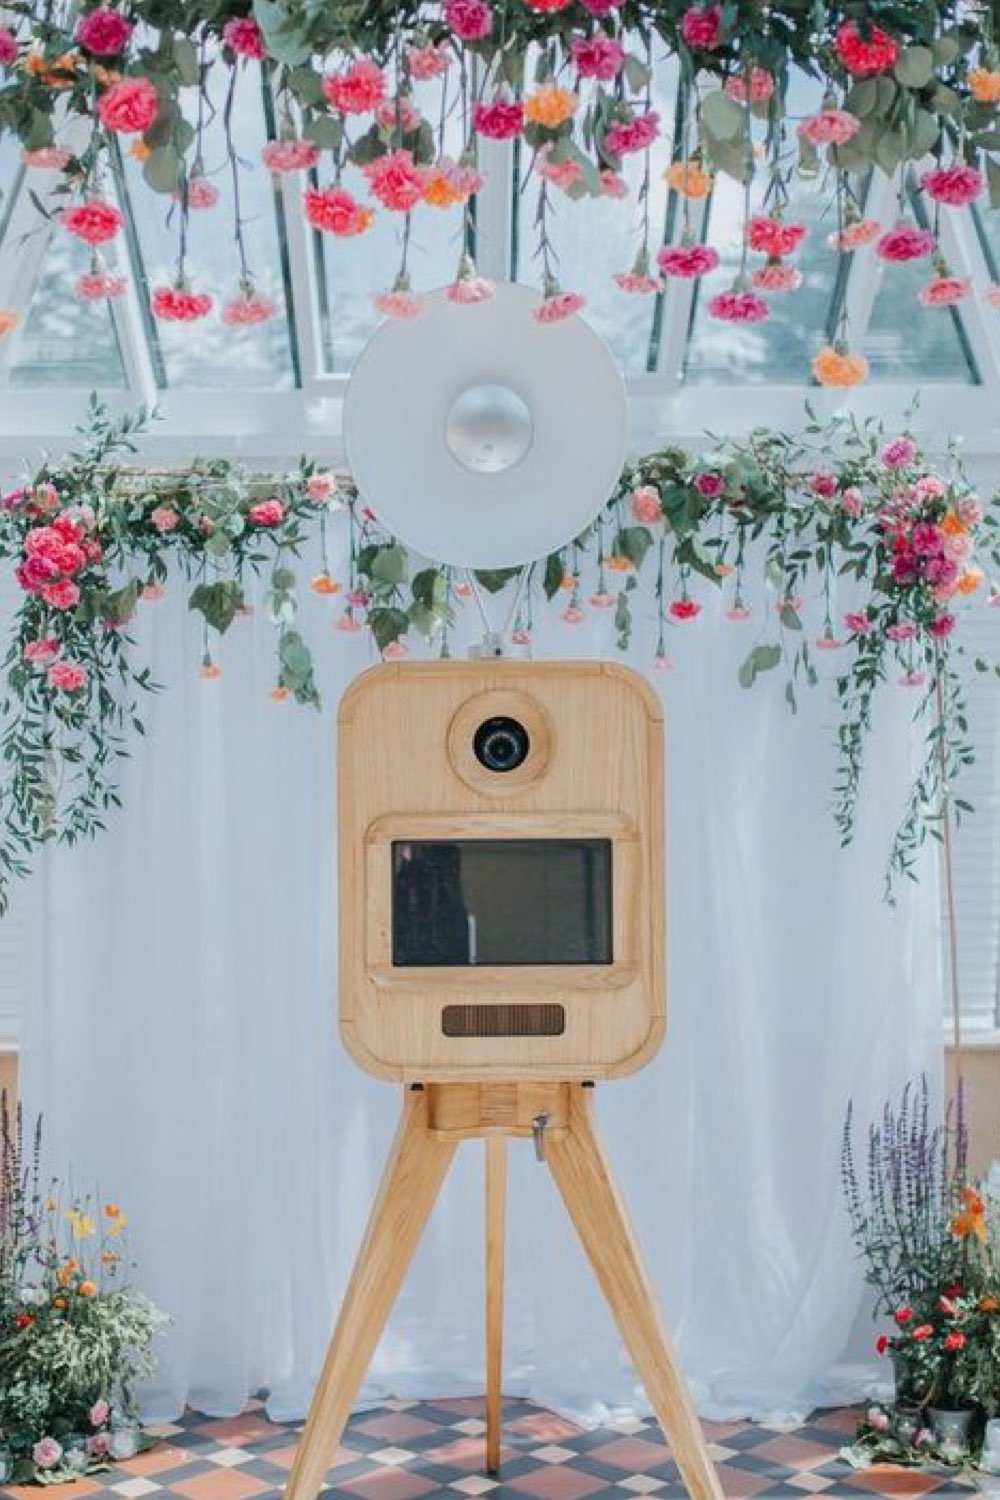 meilleur photobooth mariage décor blanc voilage fleurs suspendues ancien appareil photo